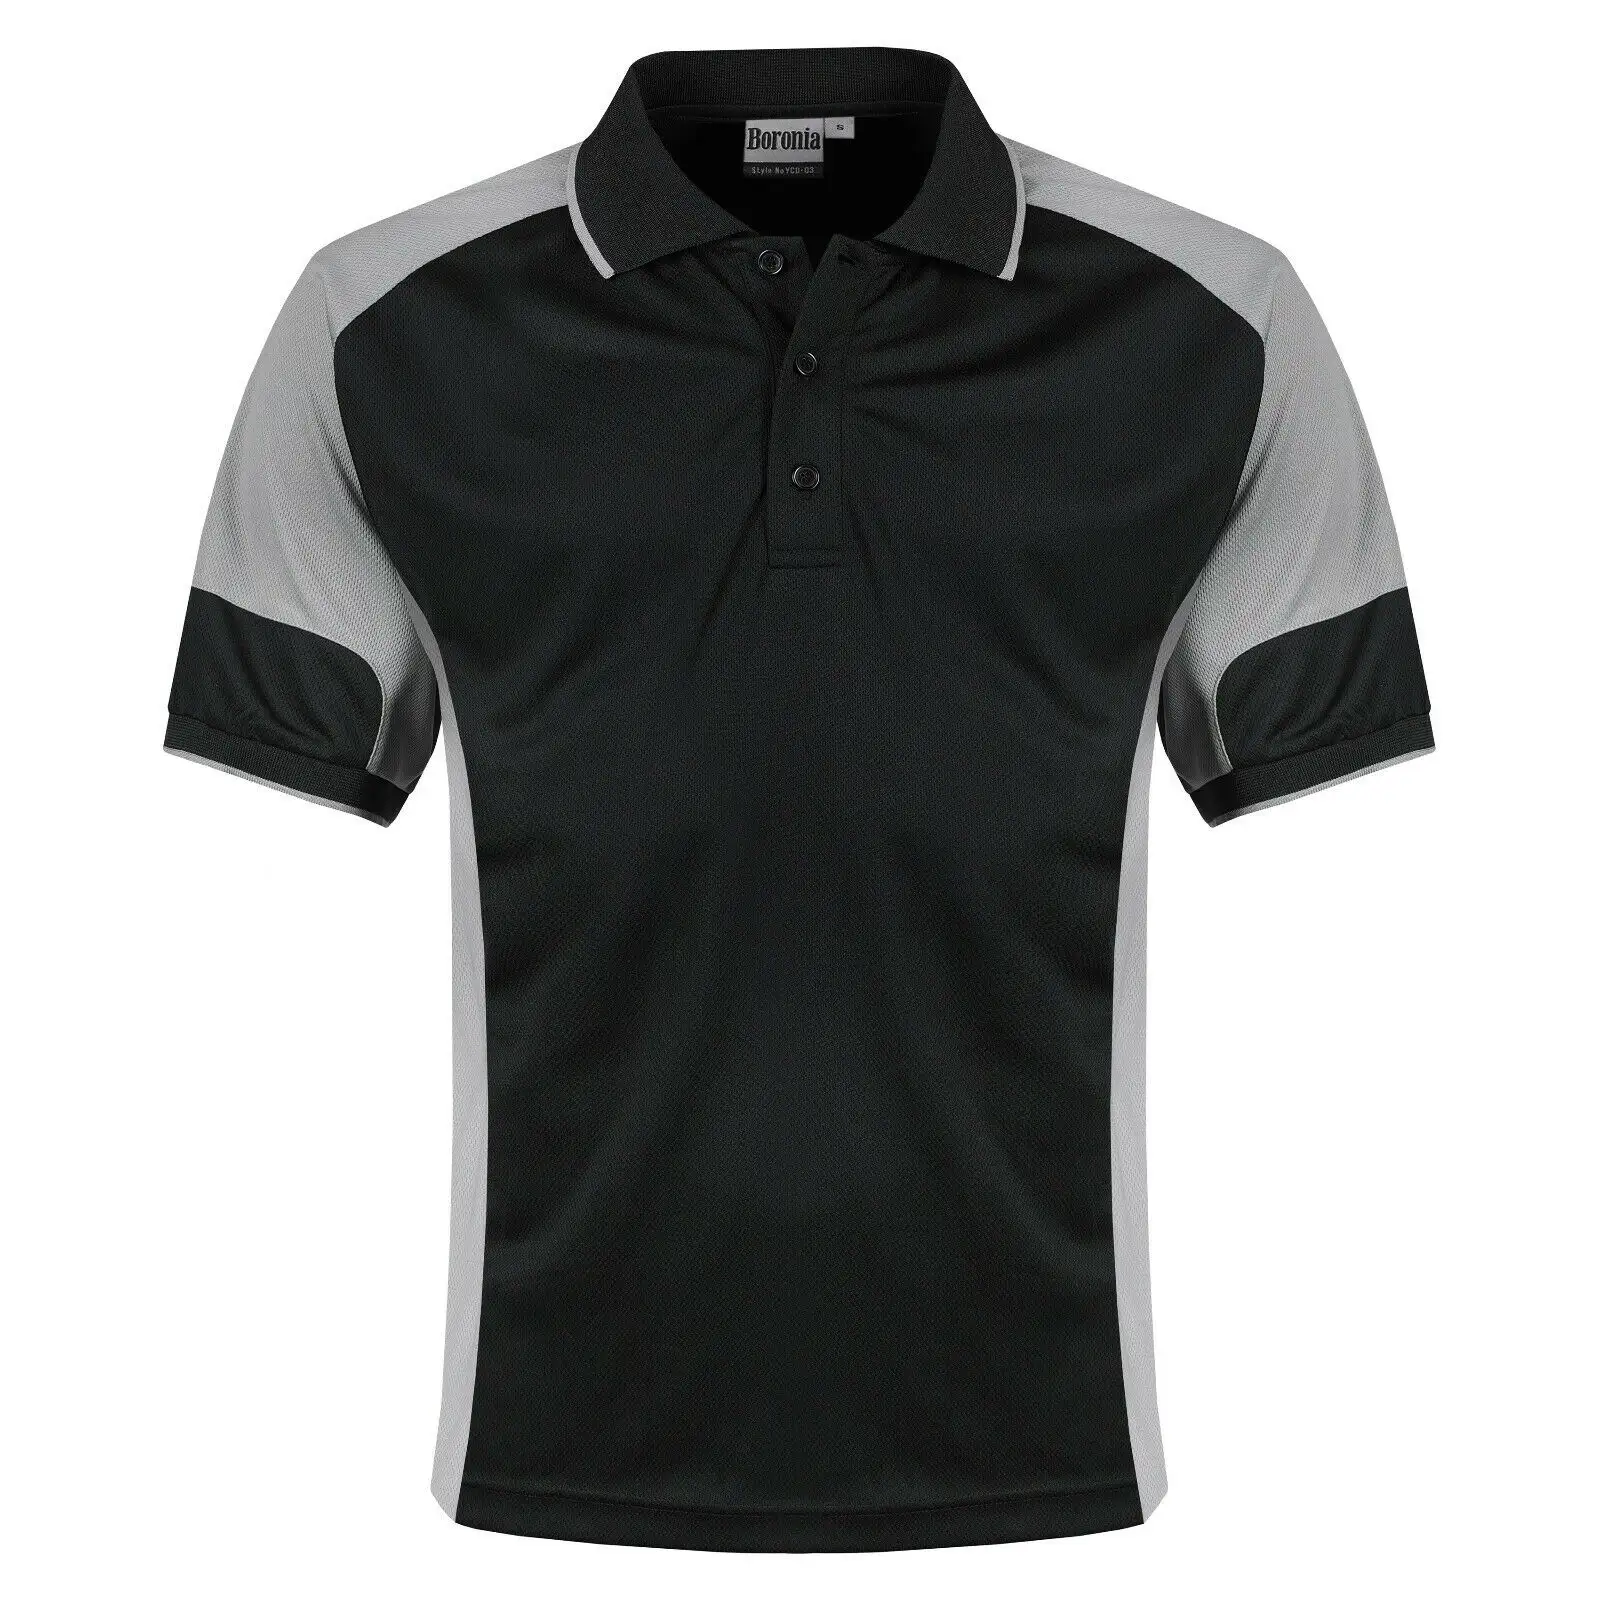 कस्टम पोलो tshirts 100% कपास पुरुषों की शर्ट कस्टम गोल्फ पोलो शर्ट कस्टम लोगो polos टी शर्ट के लिए पुरुषों